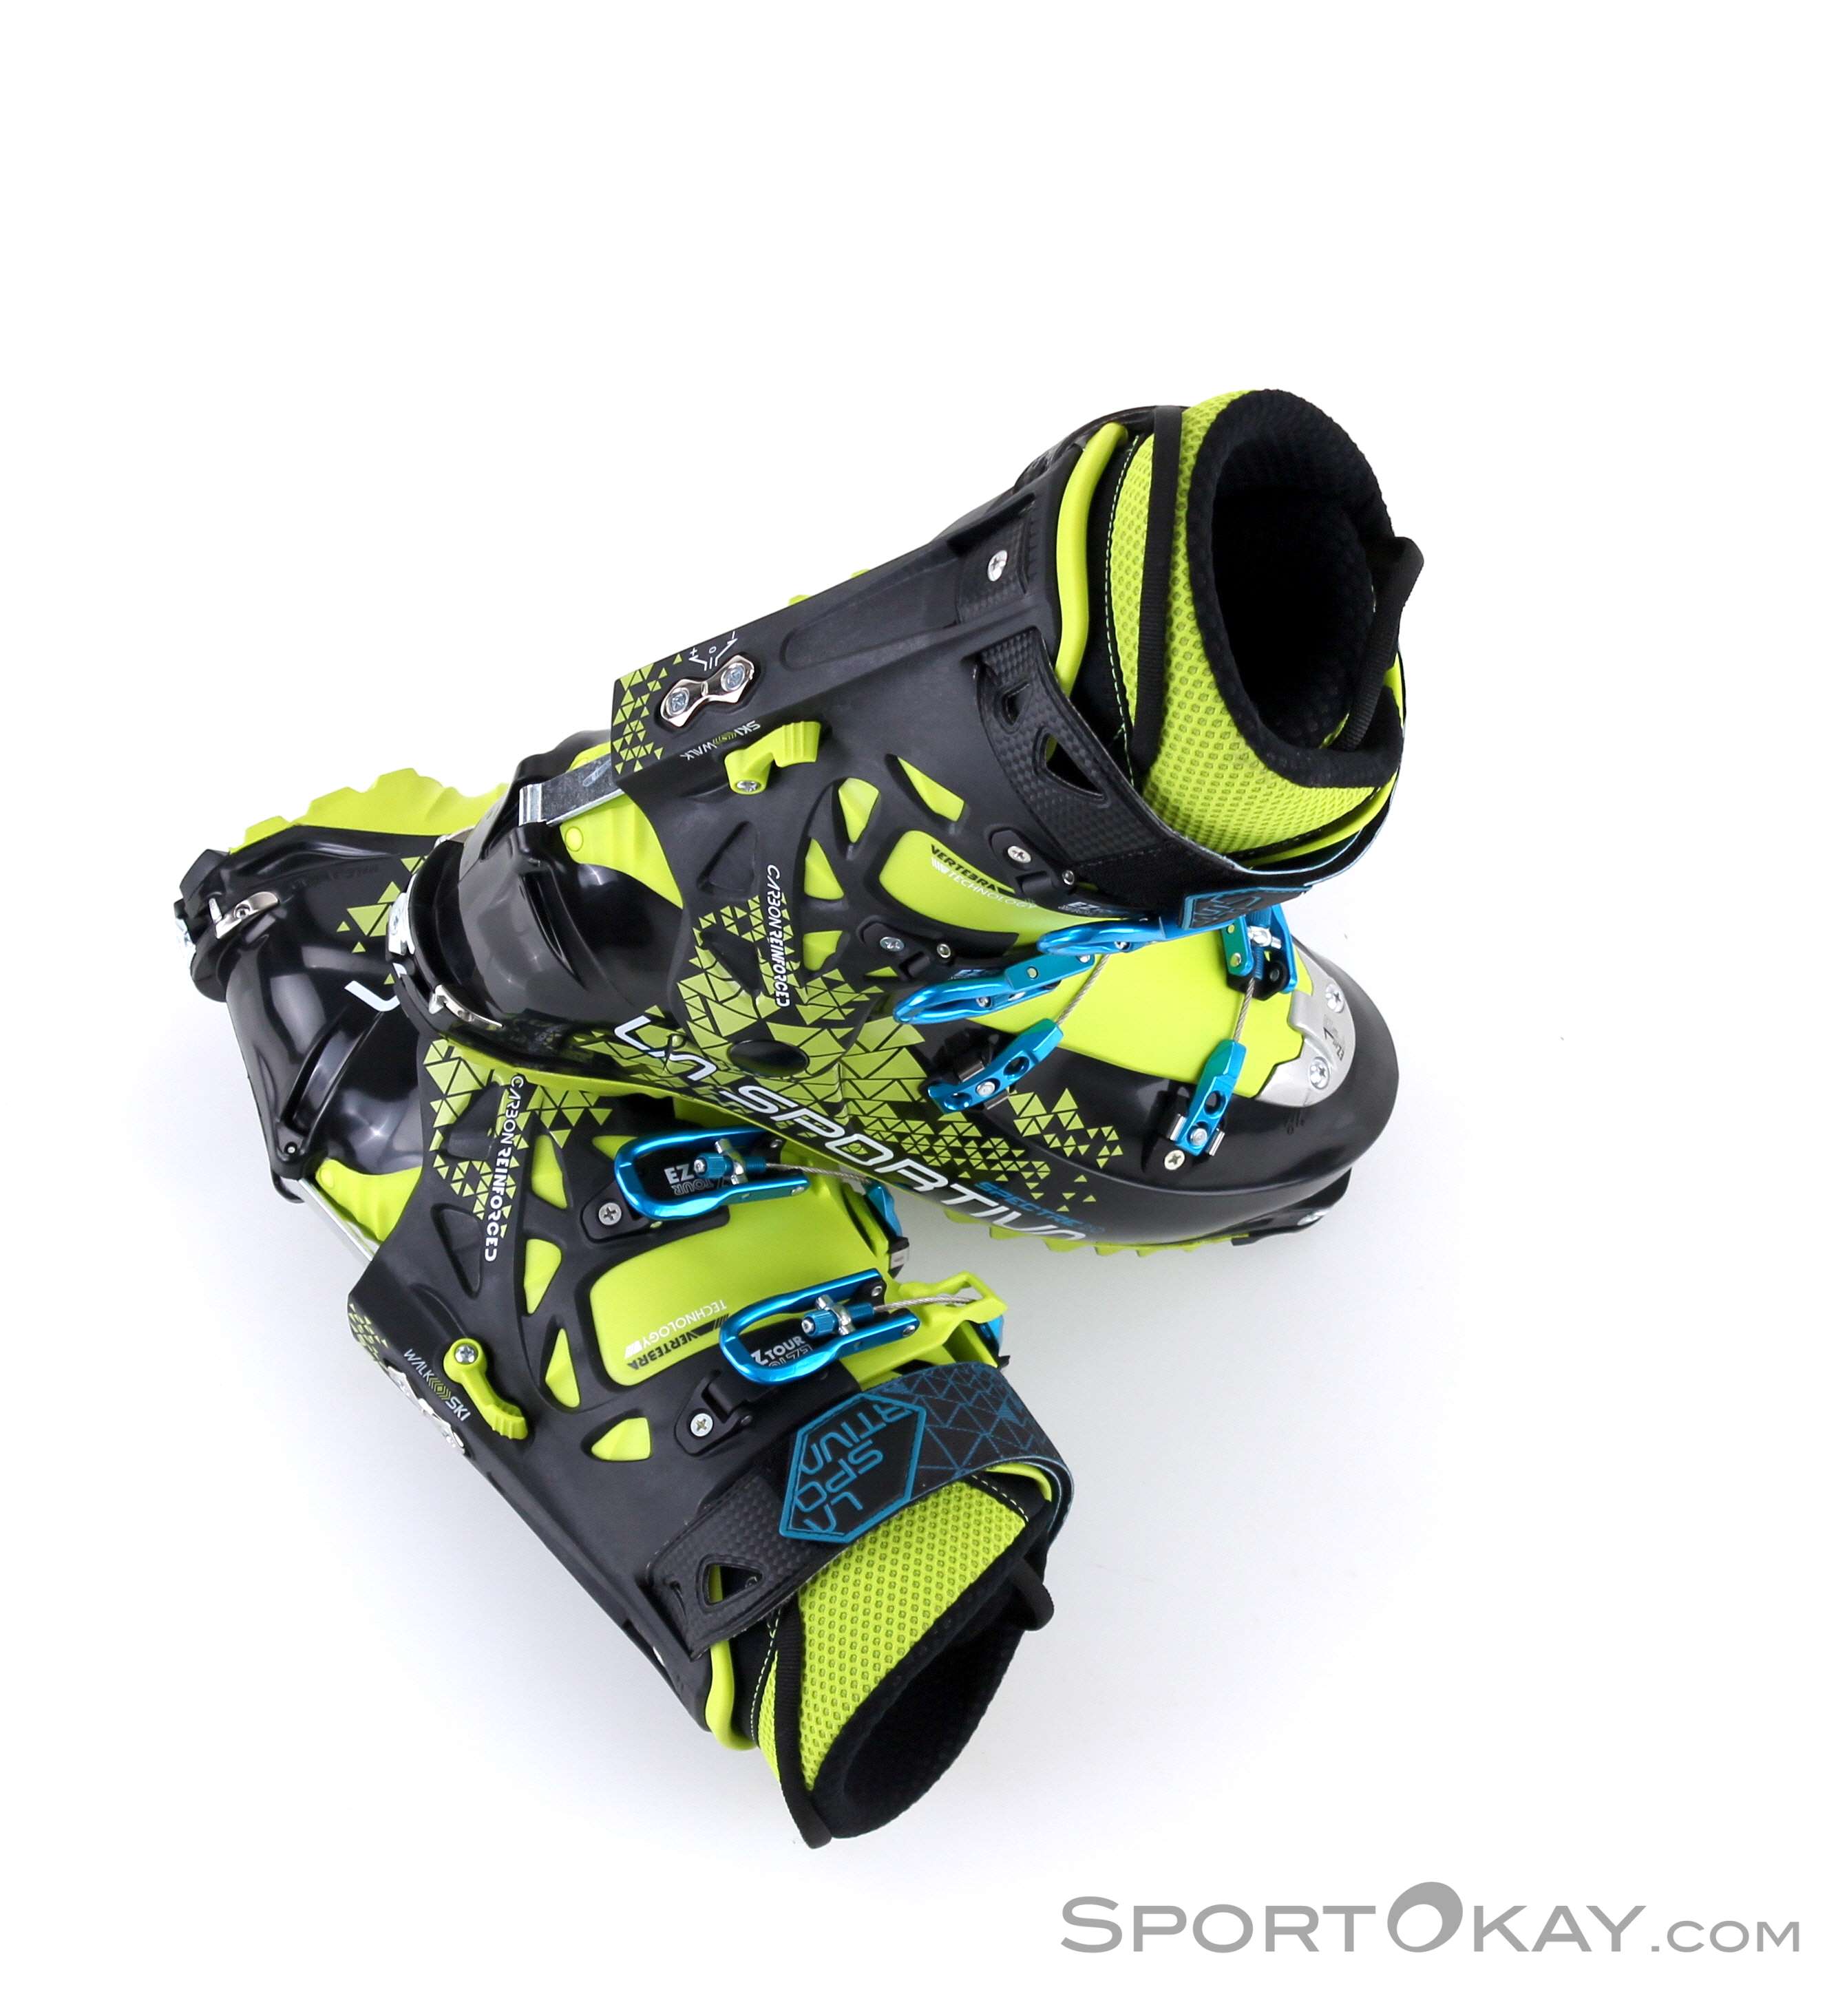 超目玉枠】 La Sportiva Spectre Ski Touring Boots???Yellow Black, Size 31 並行輸入品 